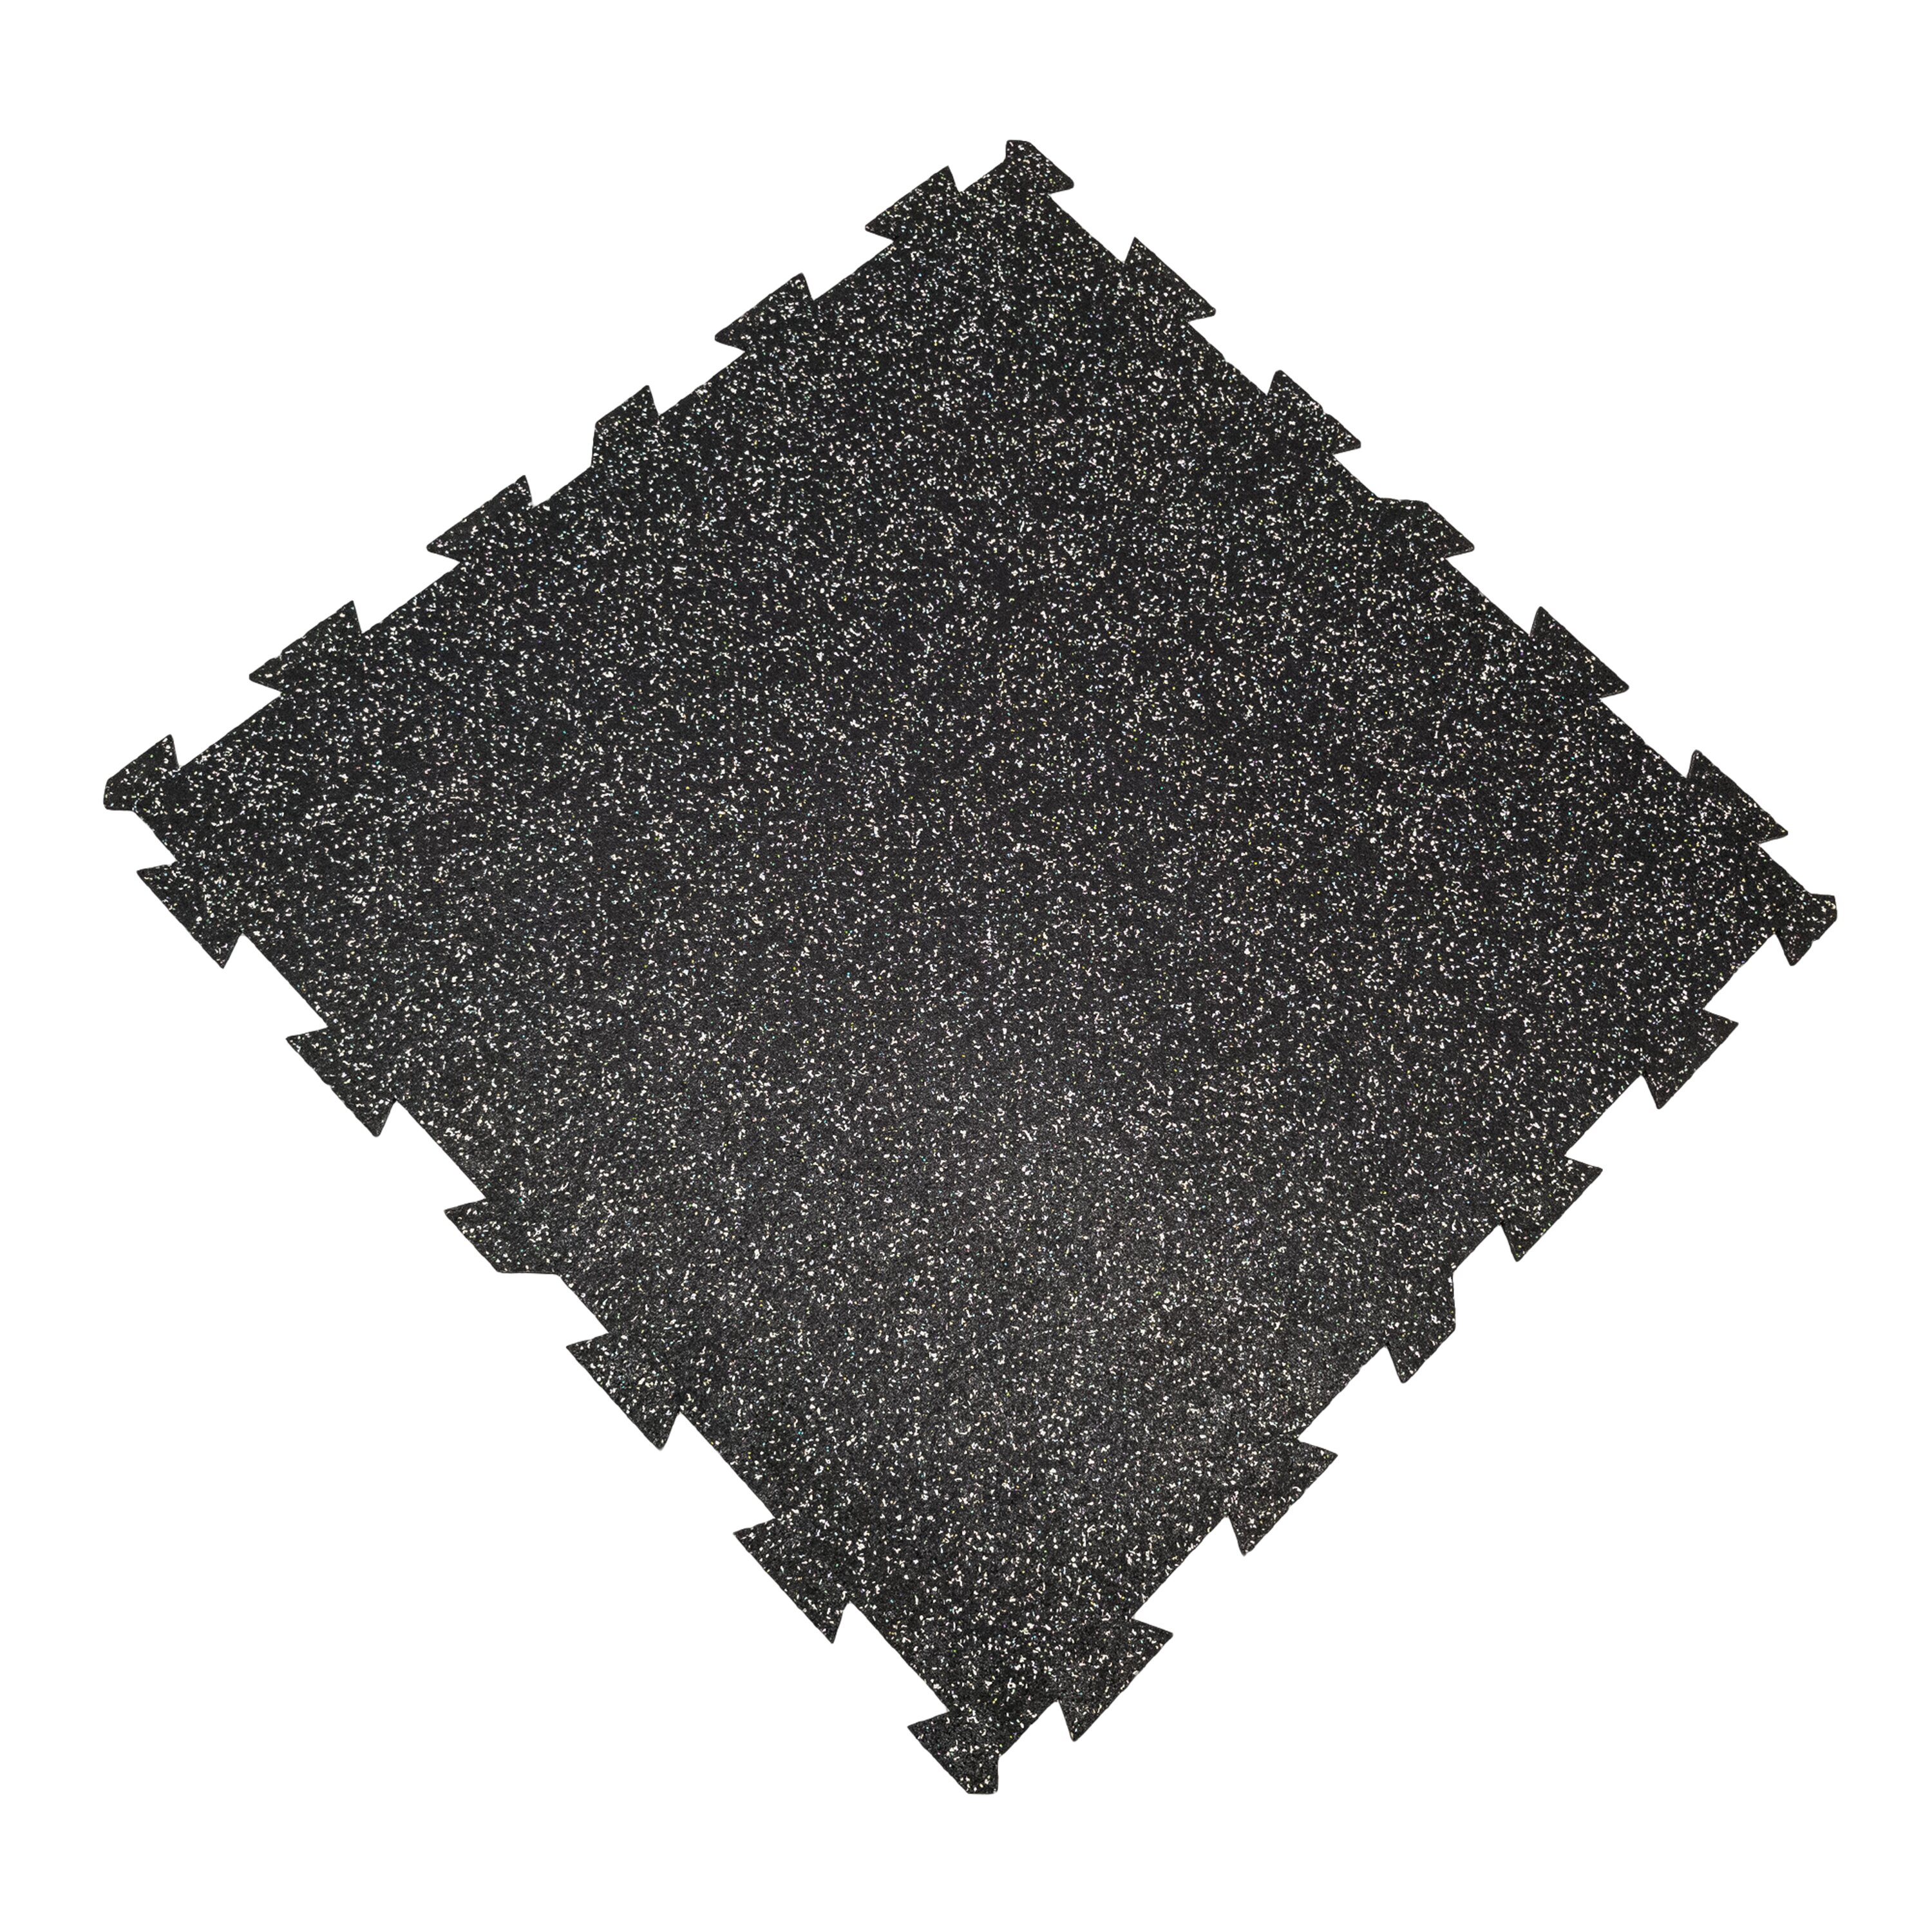 Černo-bílá podlahová guma FLOMA FitFlo SF1050 - délka 100 cm, šířka 100 cm, výška 1 cm